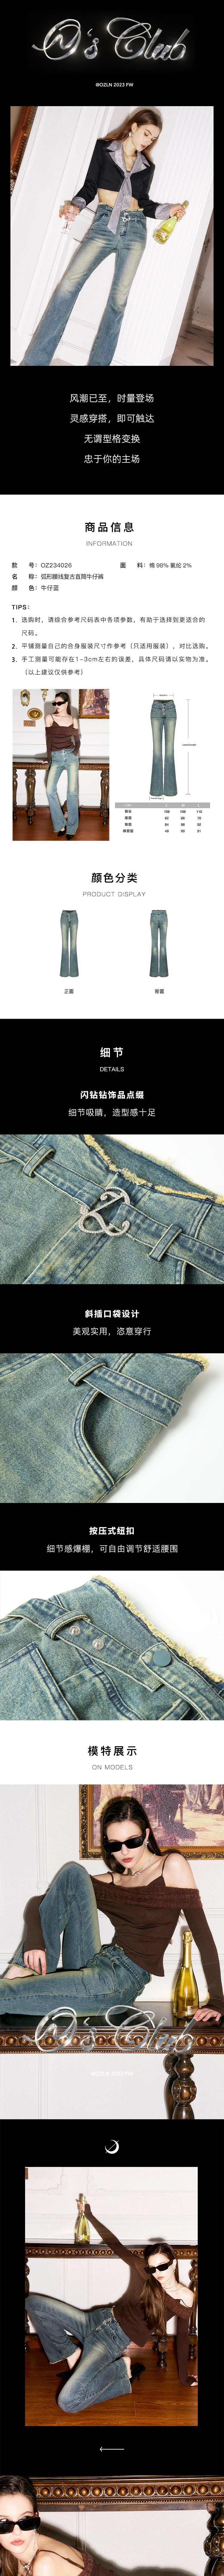 【中国直邮】OZLN 早秋新品弧形腰线经典复古高腰修身显瘦直筒牛仔裤 S